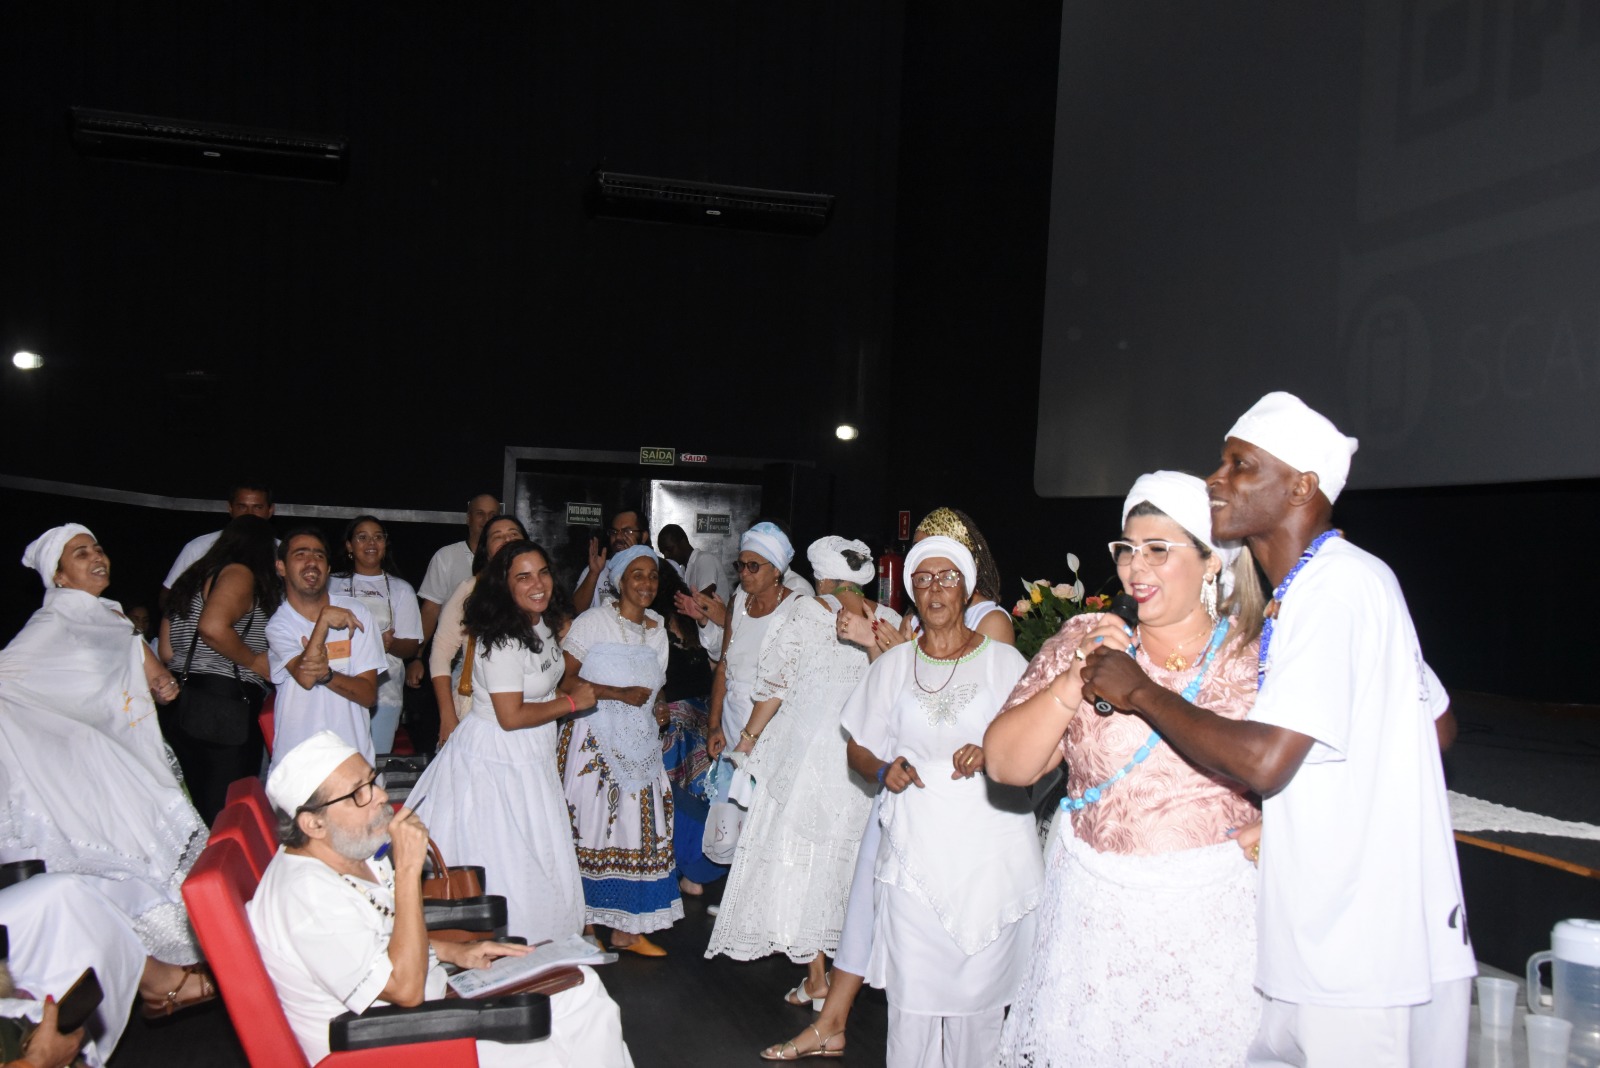 Evento teve debate sobre o futuro da religião, exibição de filme e apresentações dos grupos Vozes da Fé e Samba Show